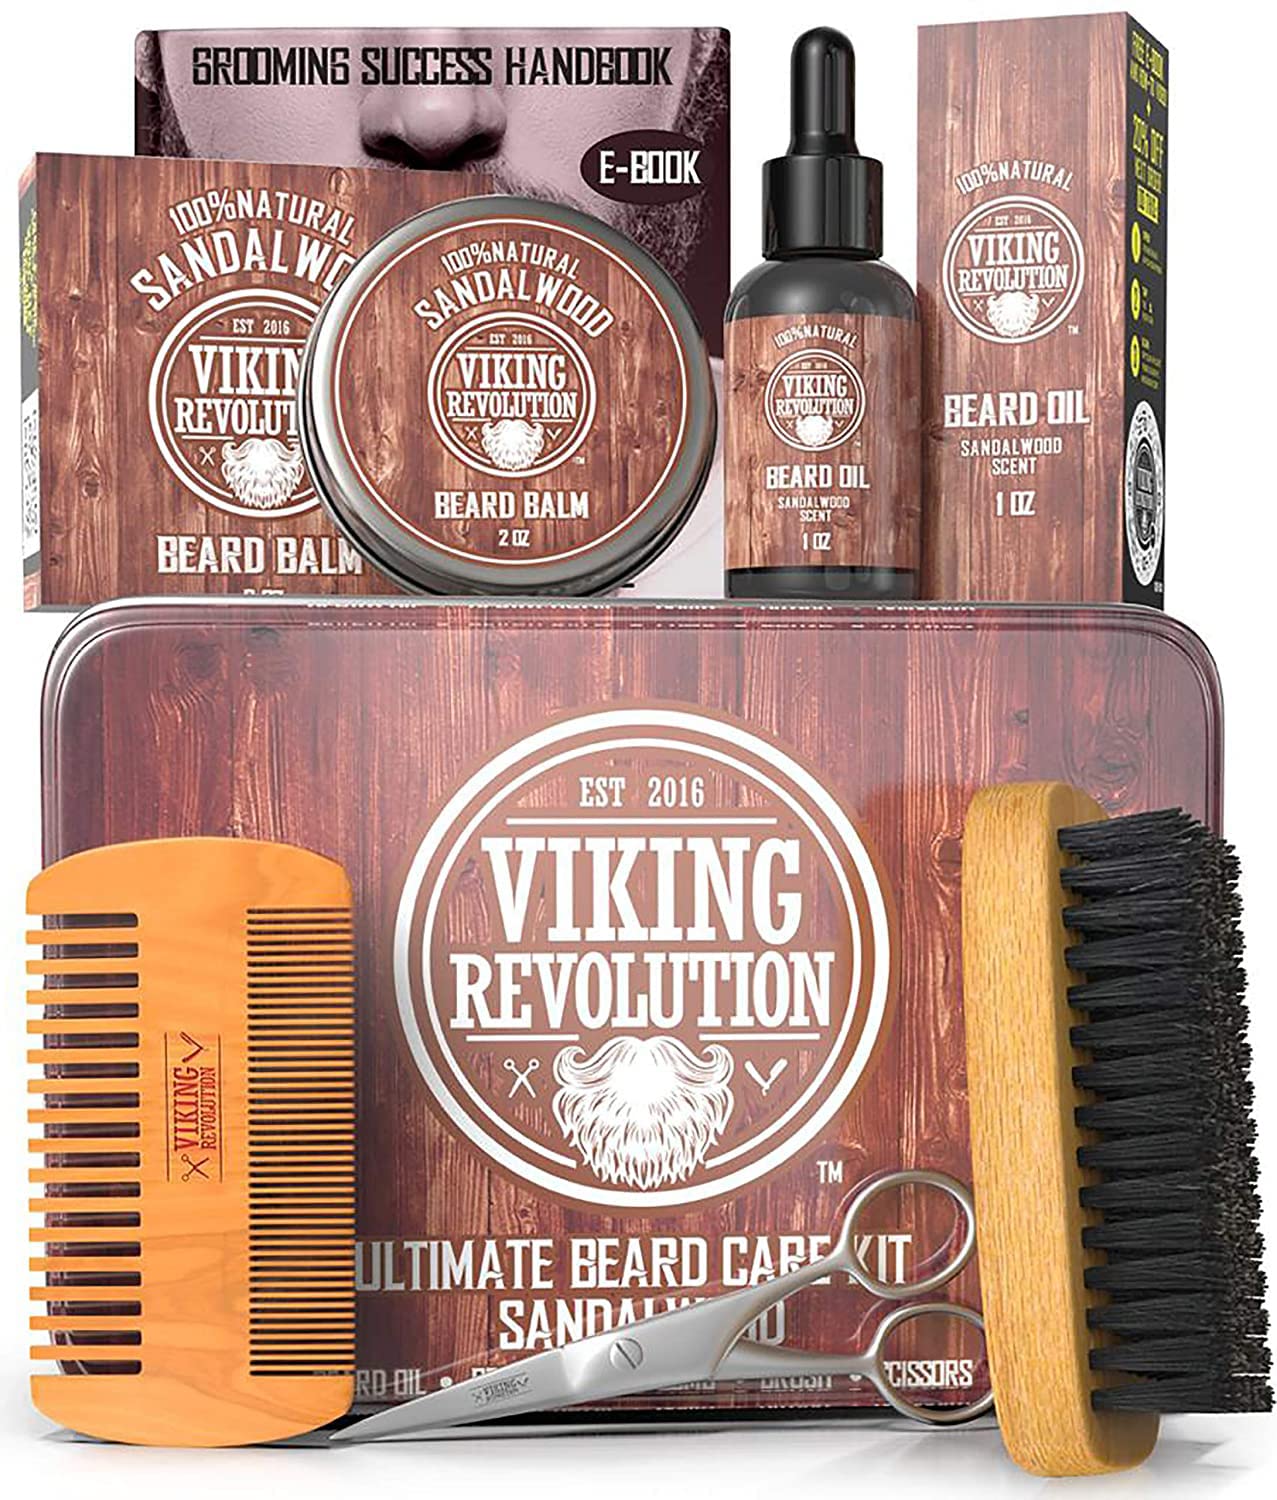 Viking Revolution Beard Care Kit for Men - Sandalwood - Ultimate Beard Grooming Kit Includes 100% Boar Beard Brush, Wood Beard Comb, Beard Balm, Beard